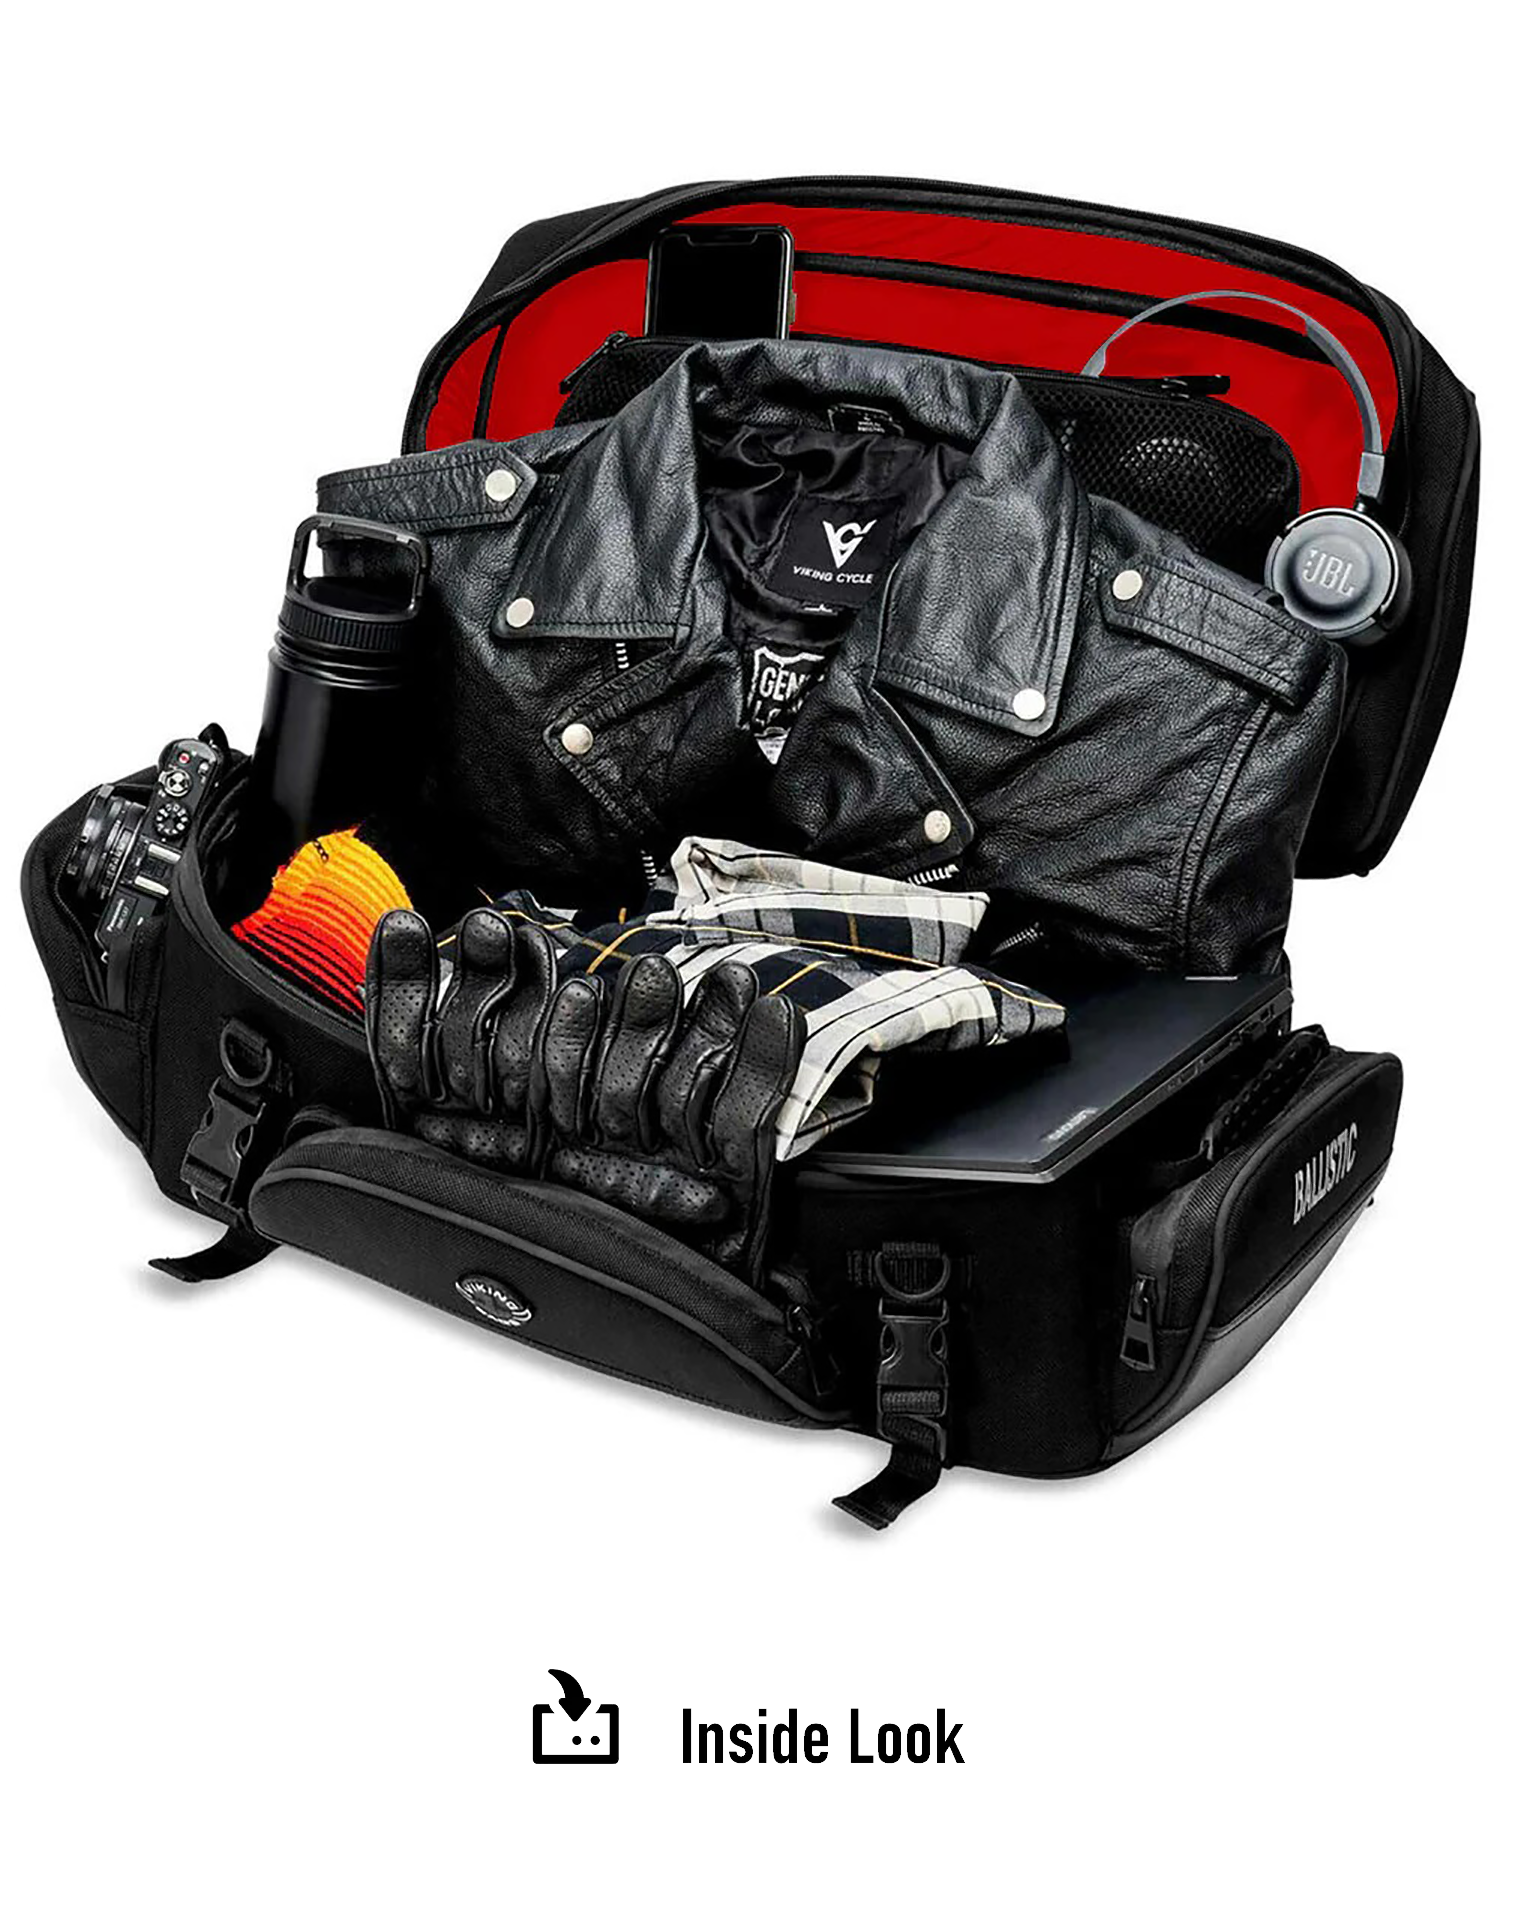 42L - Voyage Elite XL Kawasaki Motorcycle Luggage Rack Bag